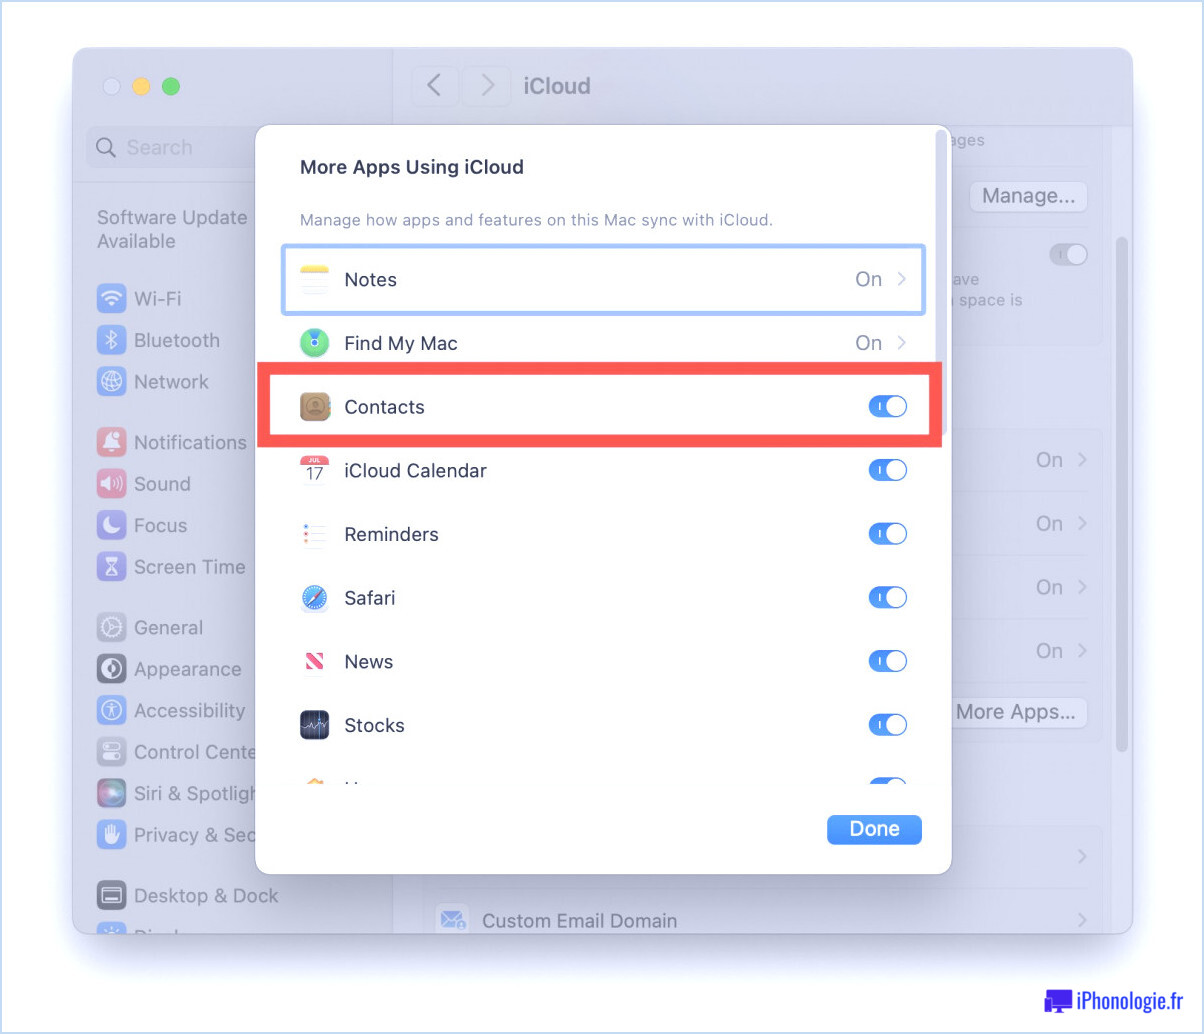 Assurez-vous que les contacts ont un accès iCloud sur Mac